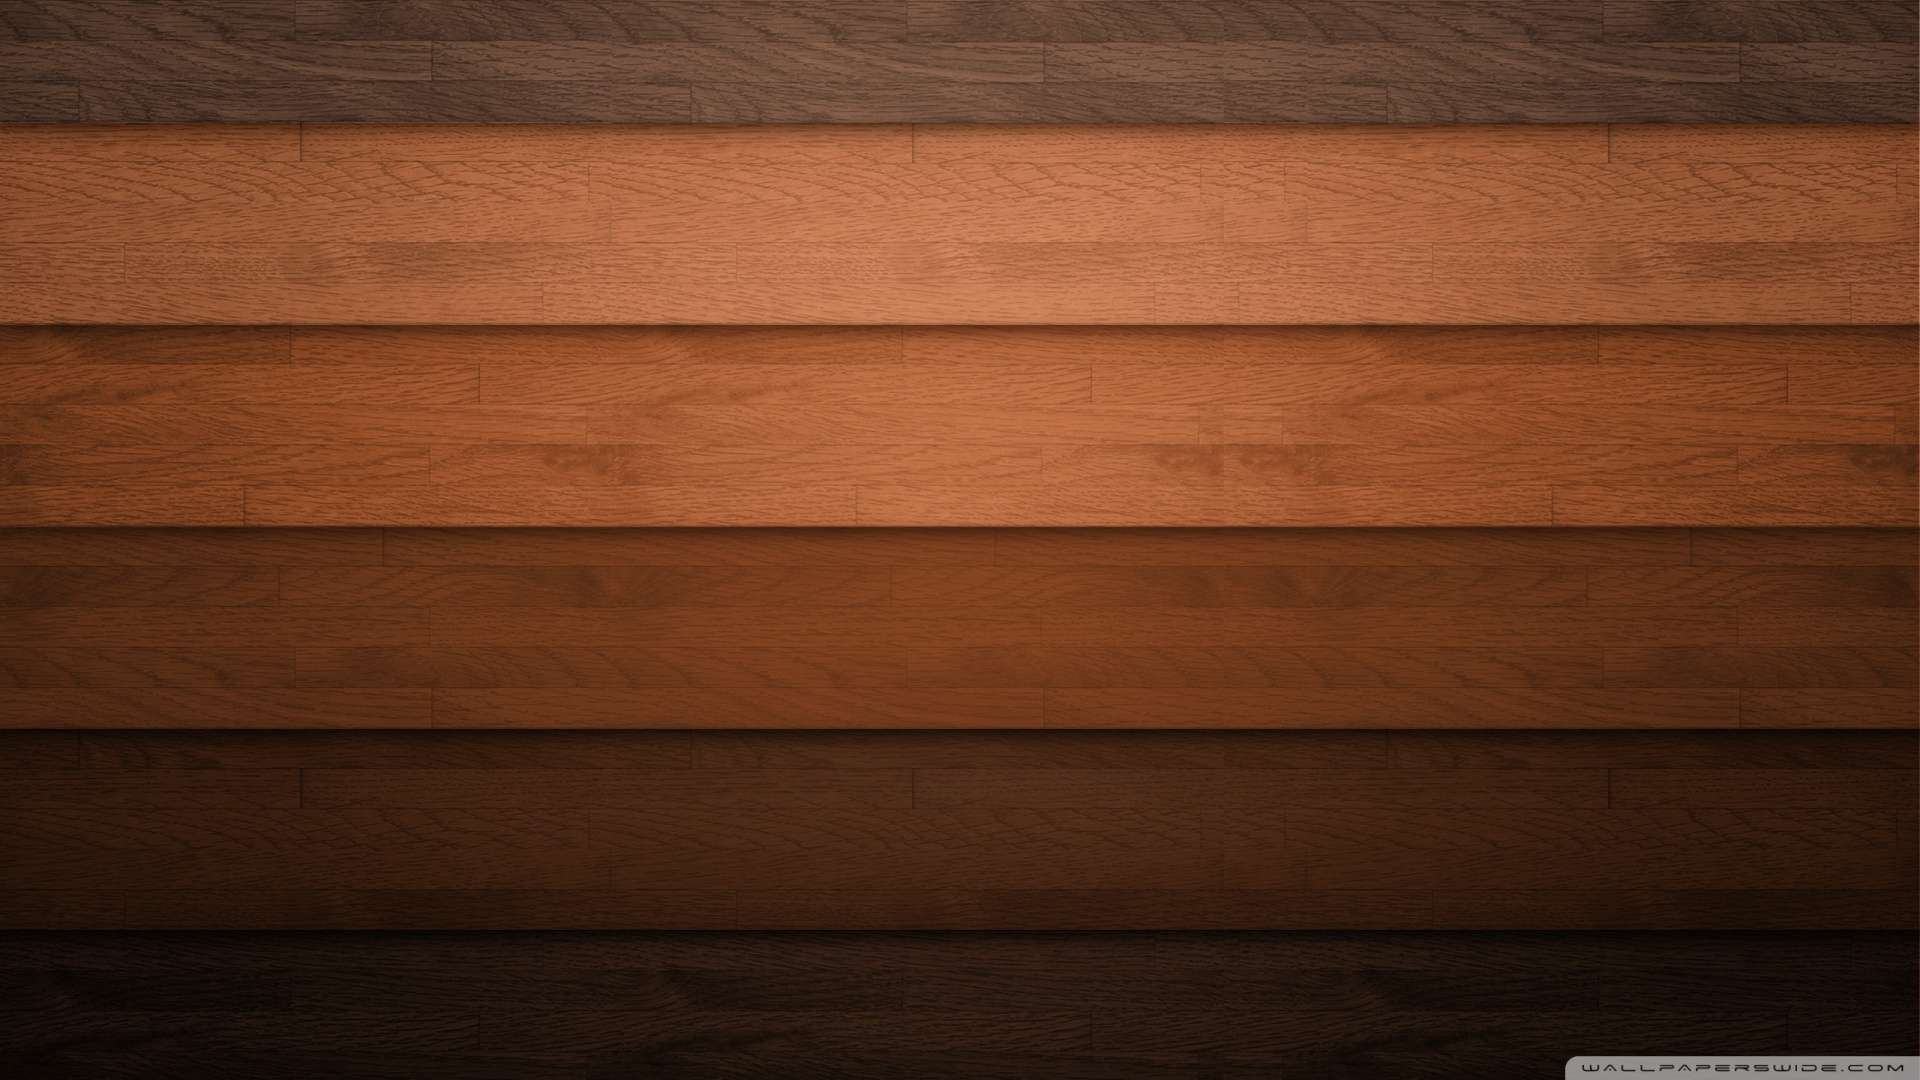 Hình nền gỗ 1080p sẽ mang lại cho bạn trải nghiệm hình ảnh tuyệt đẹp về gỗ. Với độ phân giải cao, bạn sẽ được chiêm ngưỡng những chi tiết tinh tế và đặc biệt của gỗ. Hãy cùng thưởng thức những hình nền gỗ 1080p đẹp mắt và sinh động!